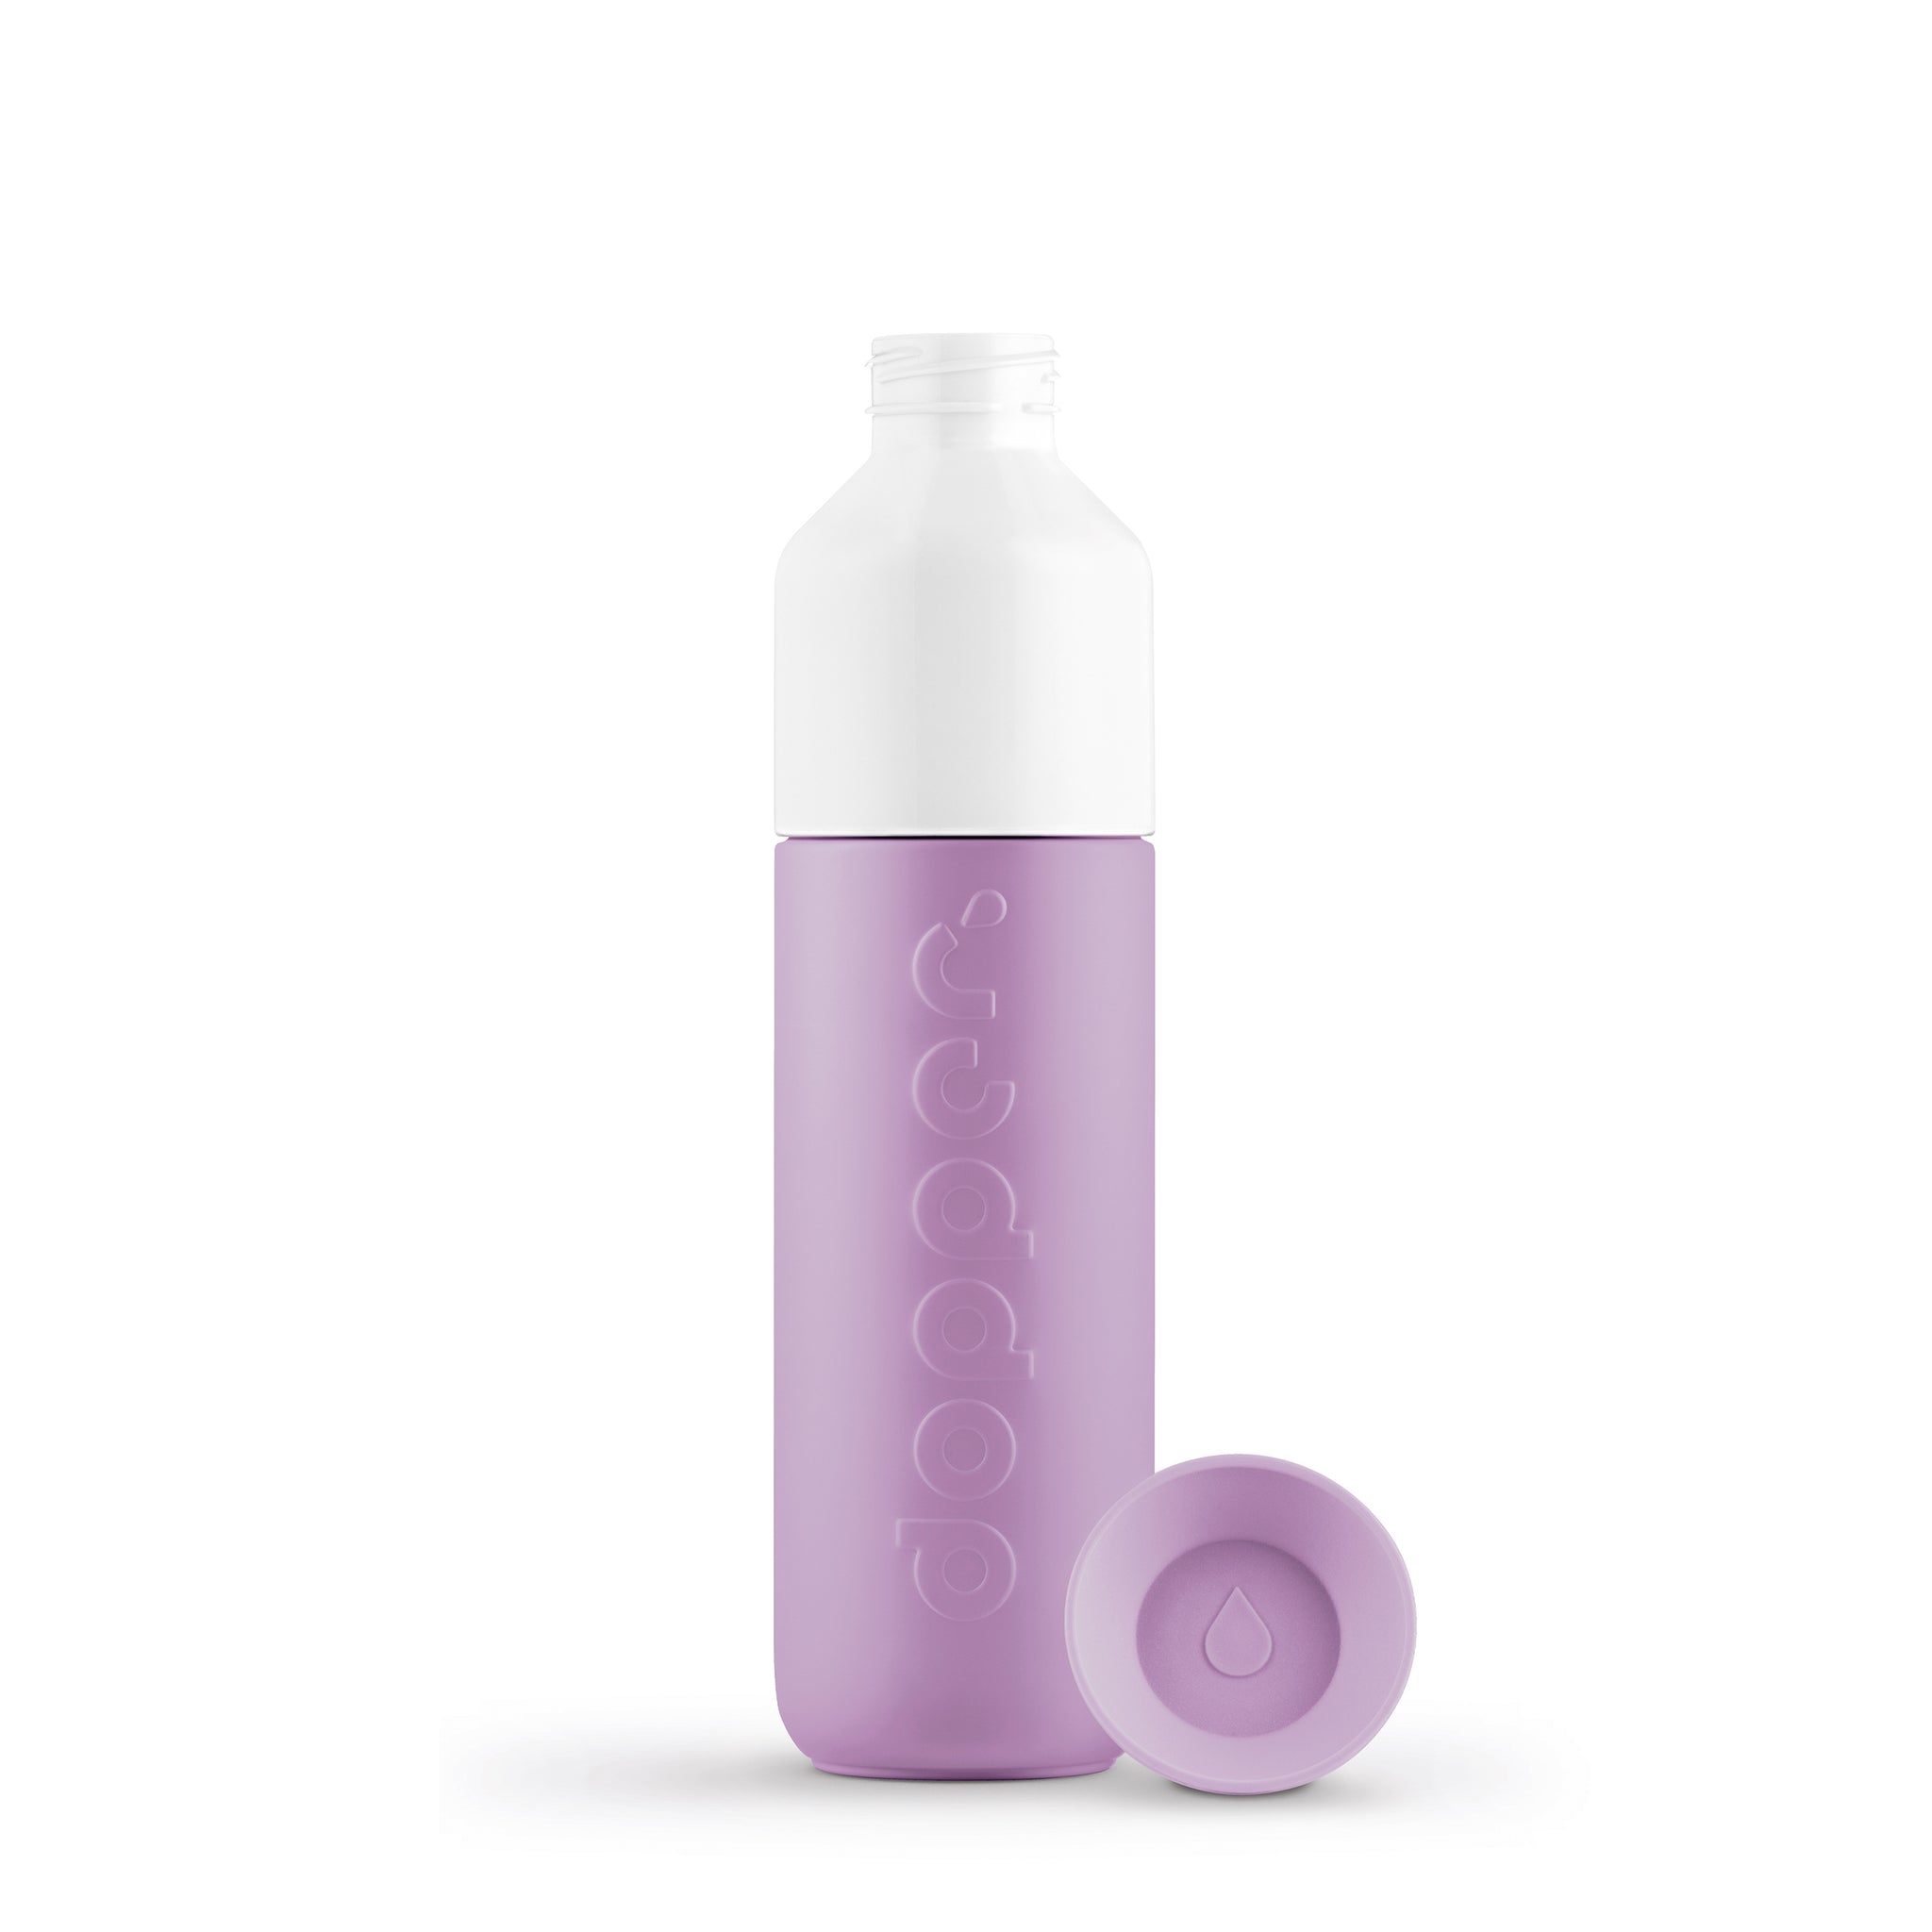 Dopper Insulated Throwback Lilac│Thermosfles 350ml paars│art. 4442│voorkant met losse dop naast fles